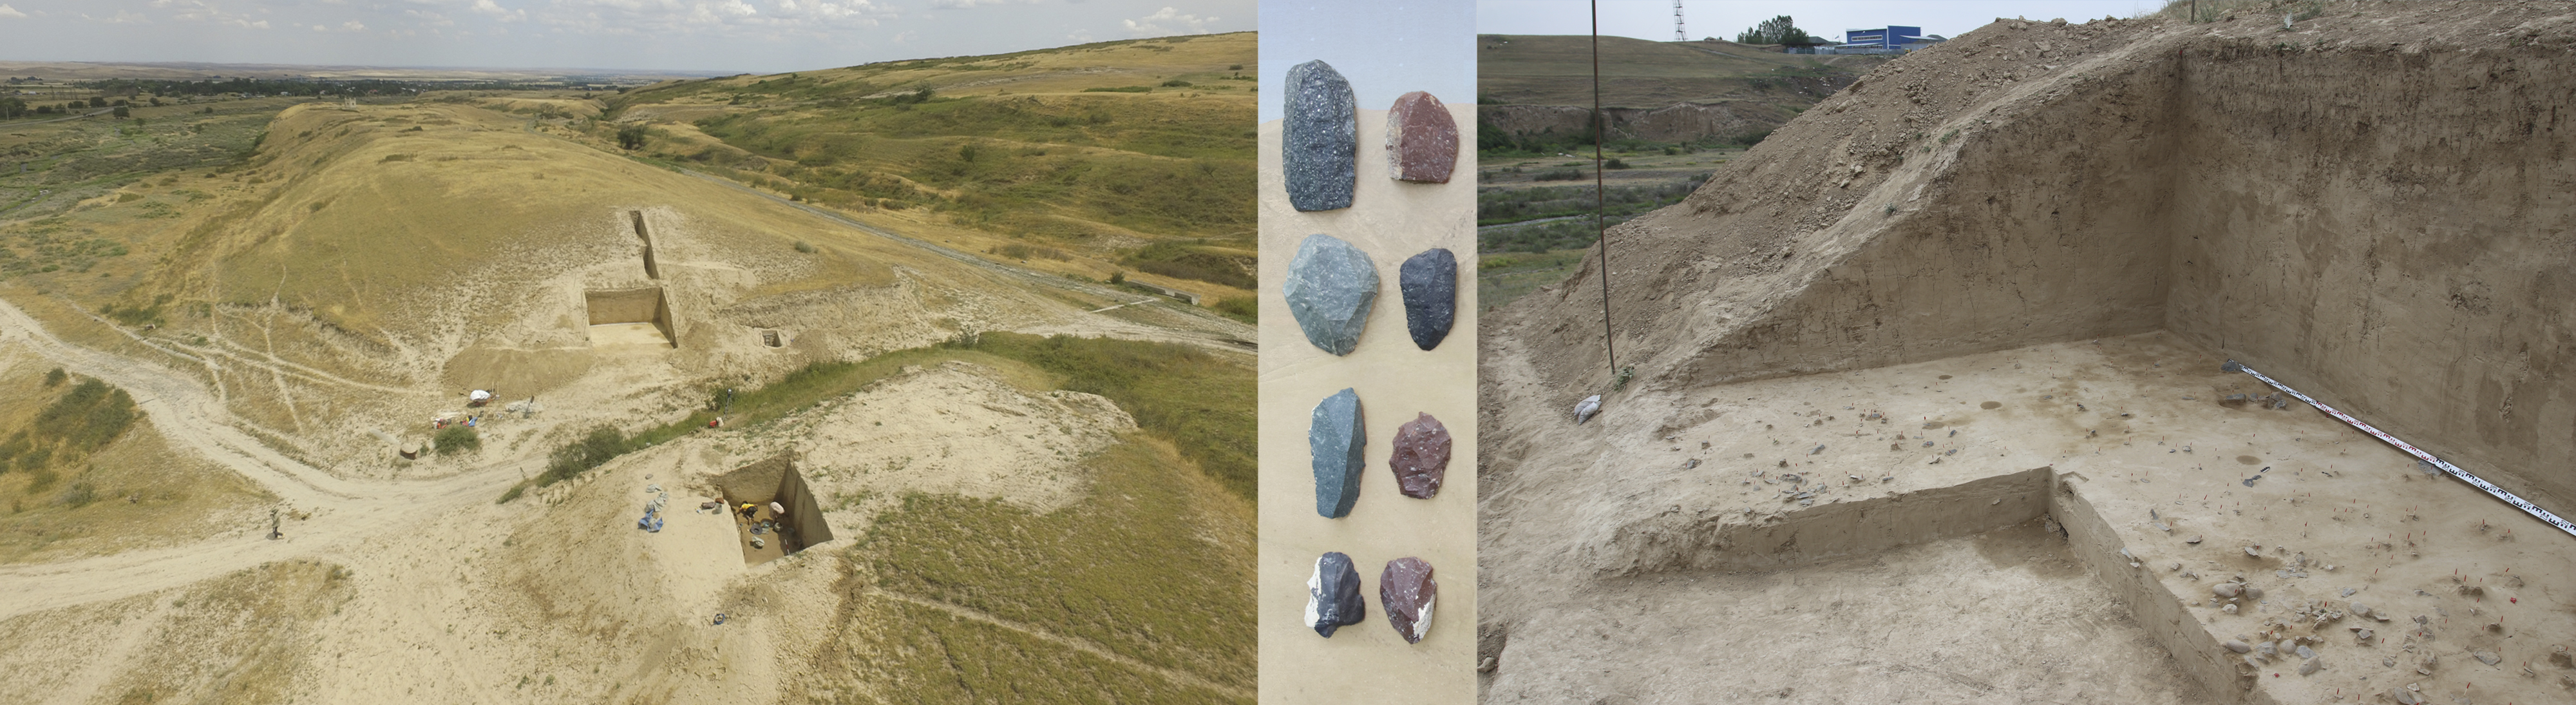 Раскопки стоянки Узынагаш, Республика Казахстан